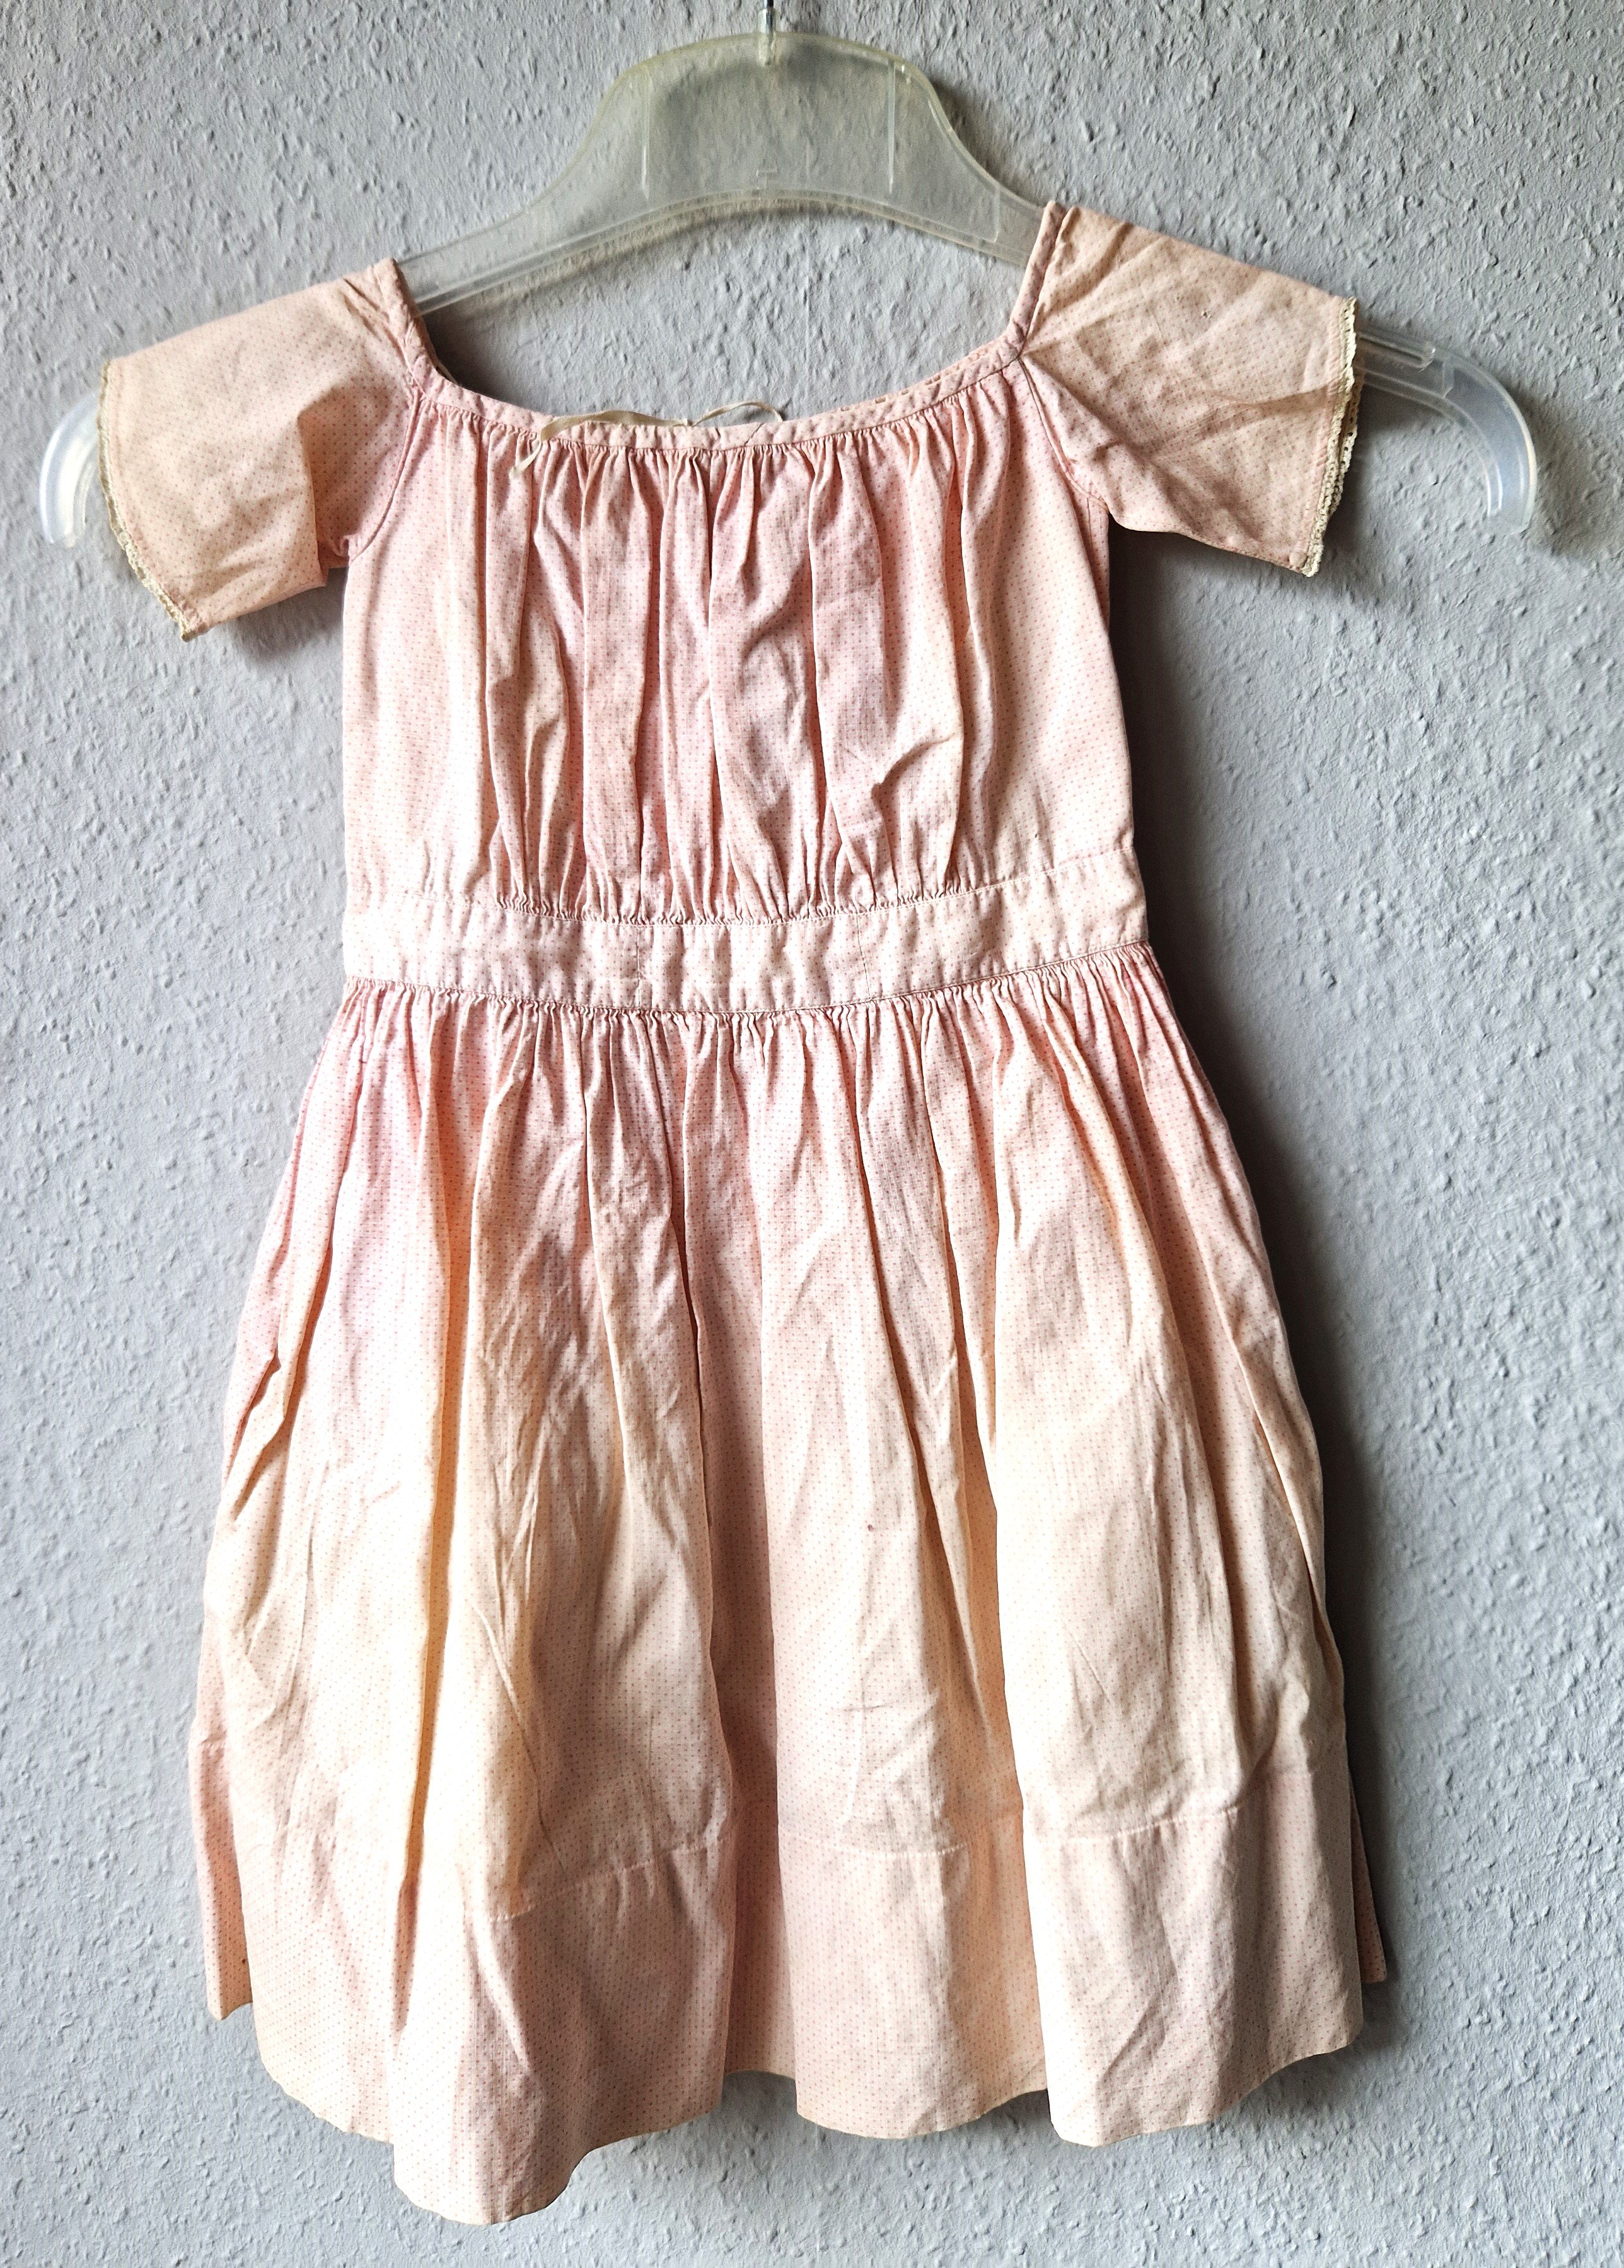 Mädchenkleid aus rosa Leinen, 1920-1950er Jahre (?) (Schloß Wernigerode GmbH RR-R)